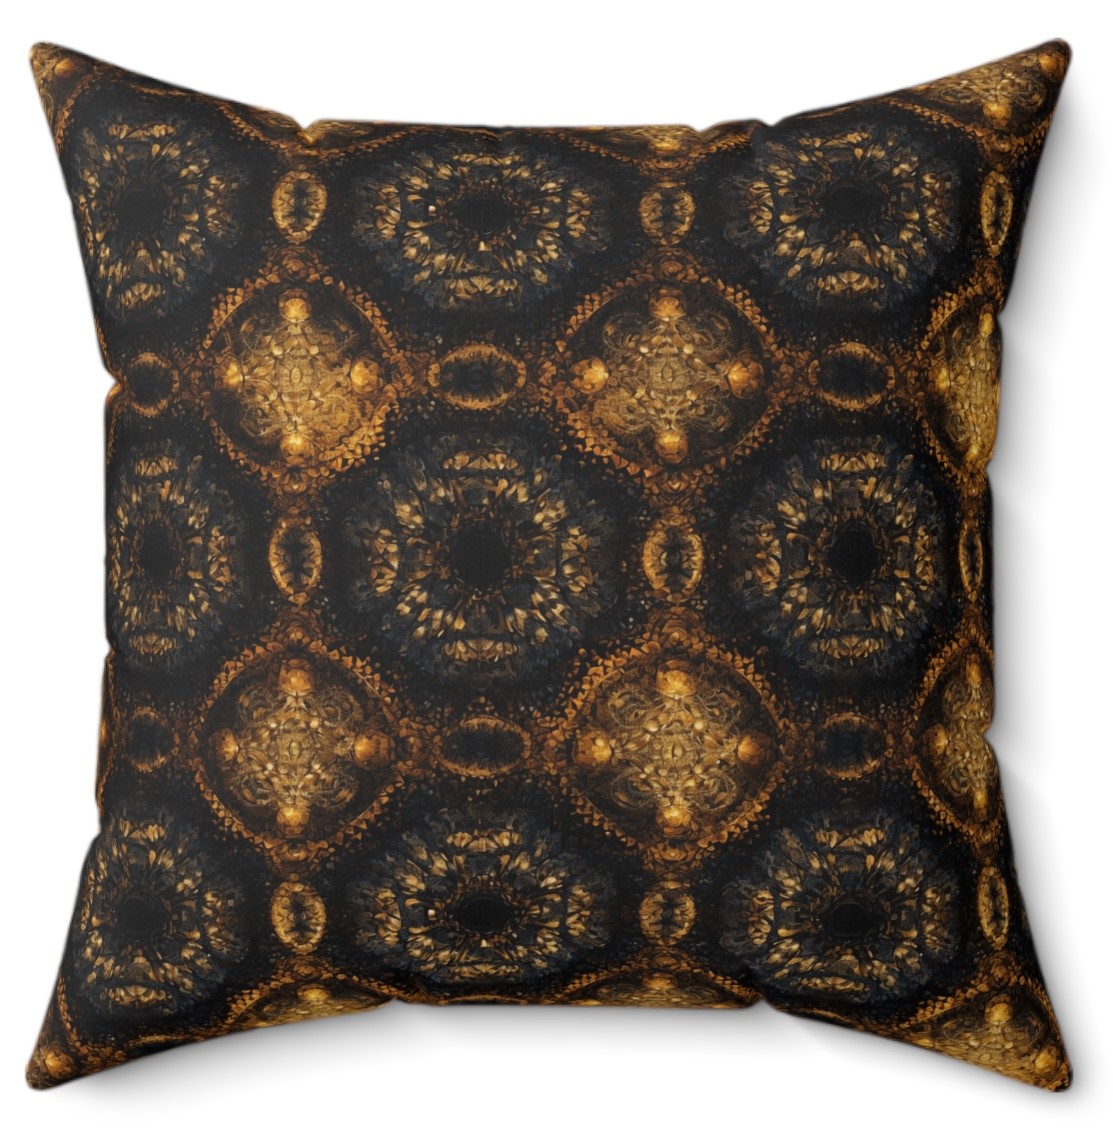 Magical Ambiance Golden Spiral Pattern Pillow